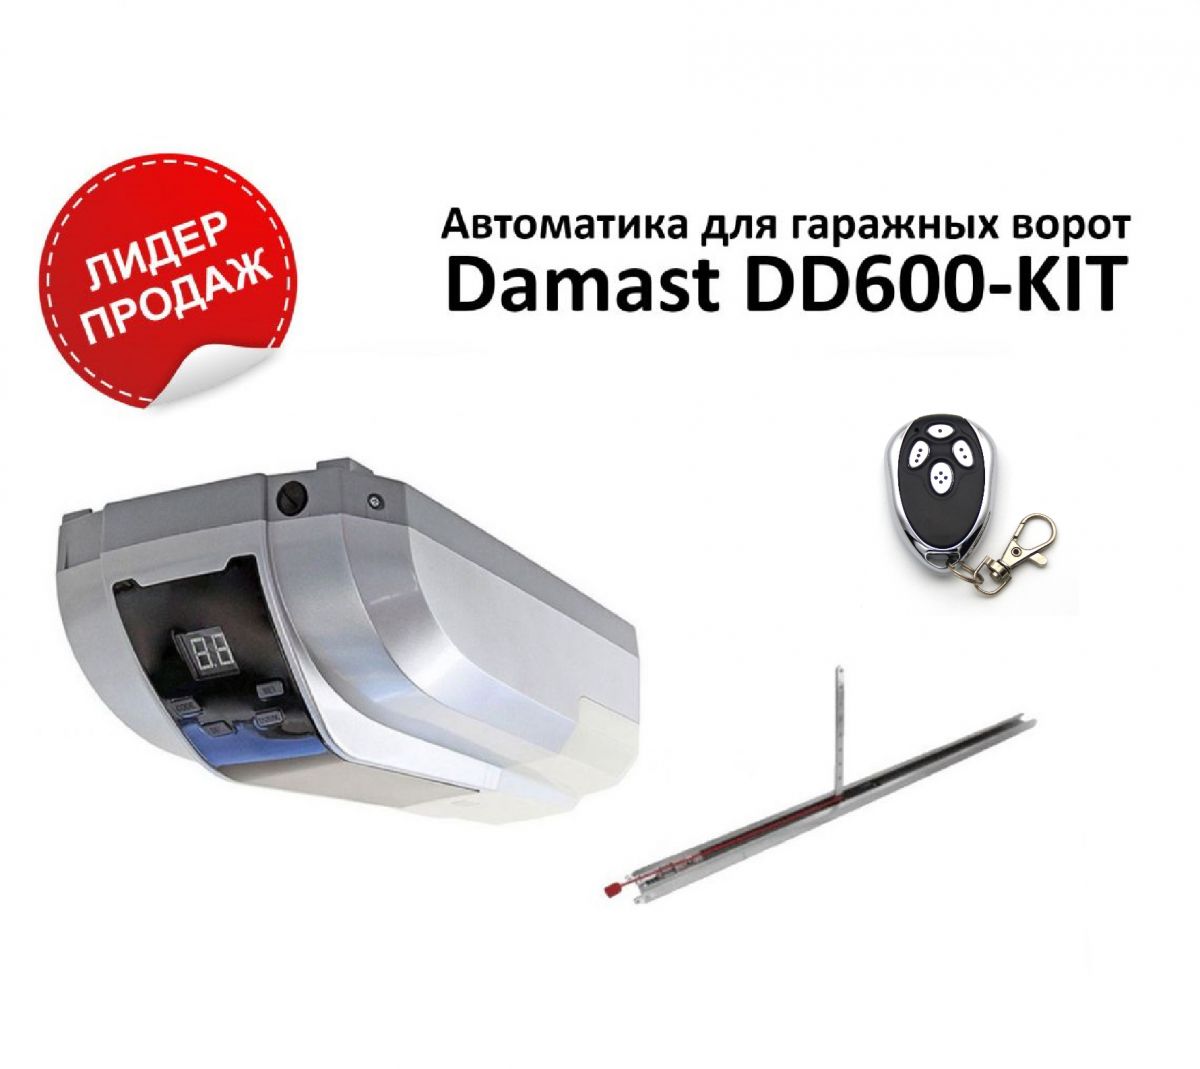 Комплект Damast DD600-KIT